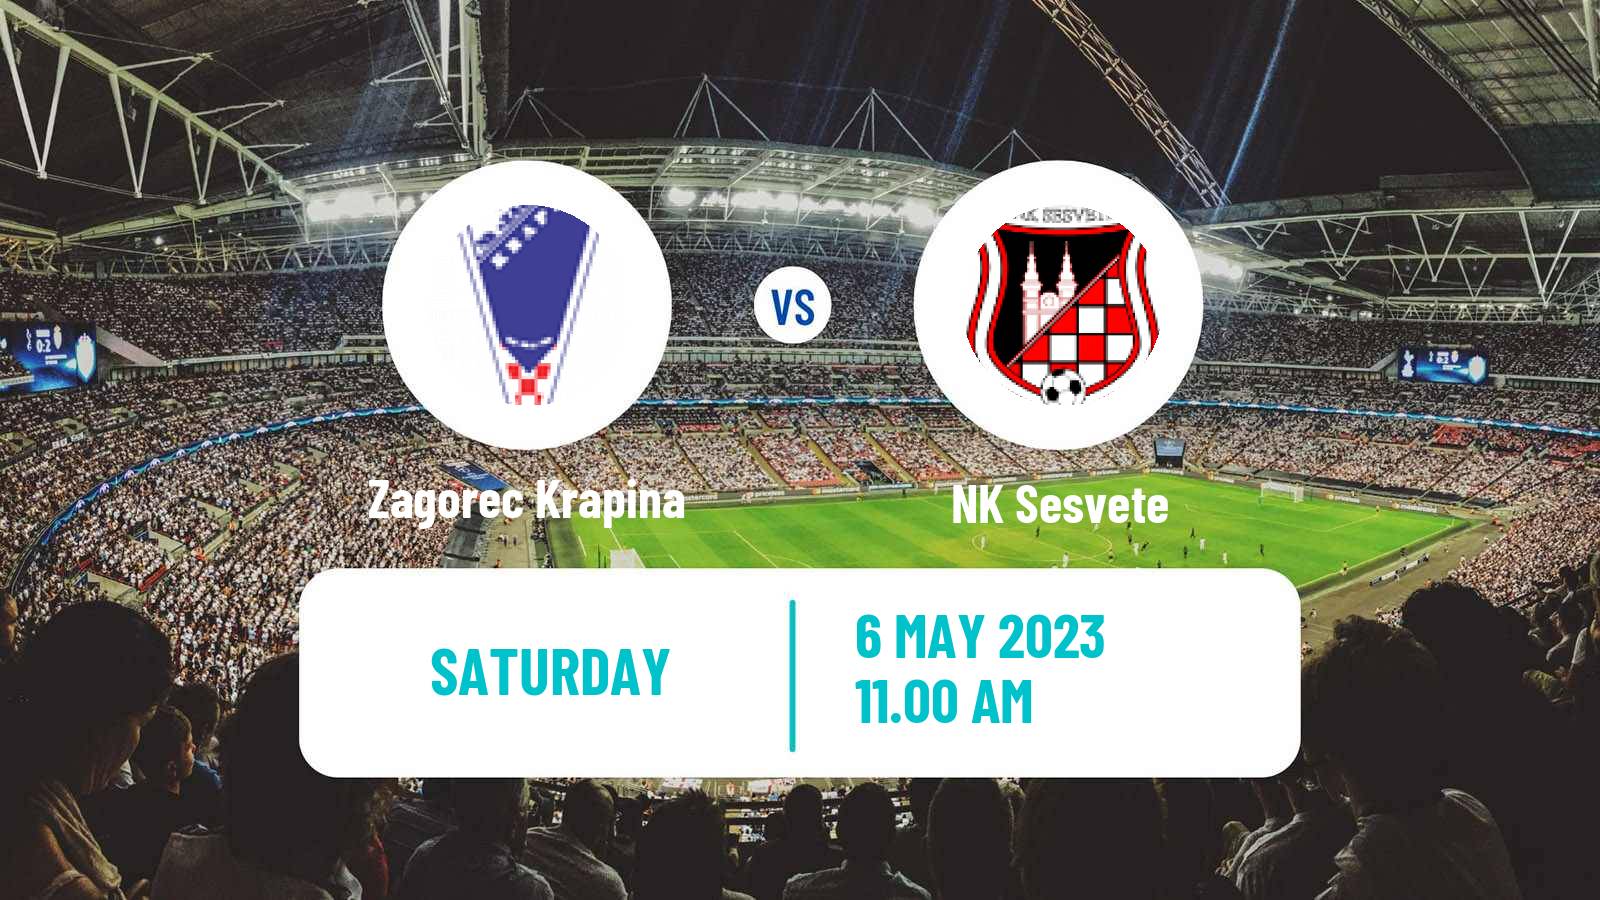 Soccer Croatian Druga NL Zagorec Krapina - Sesvete